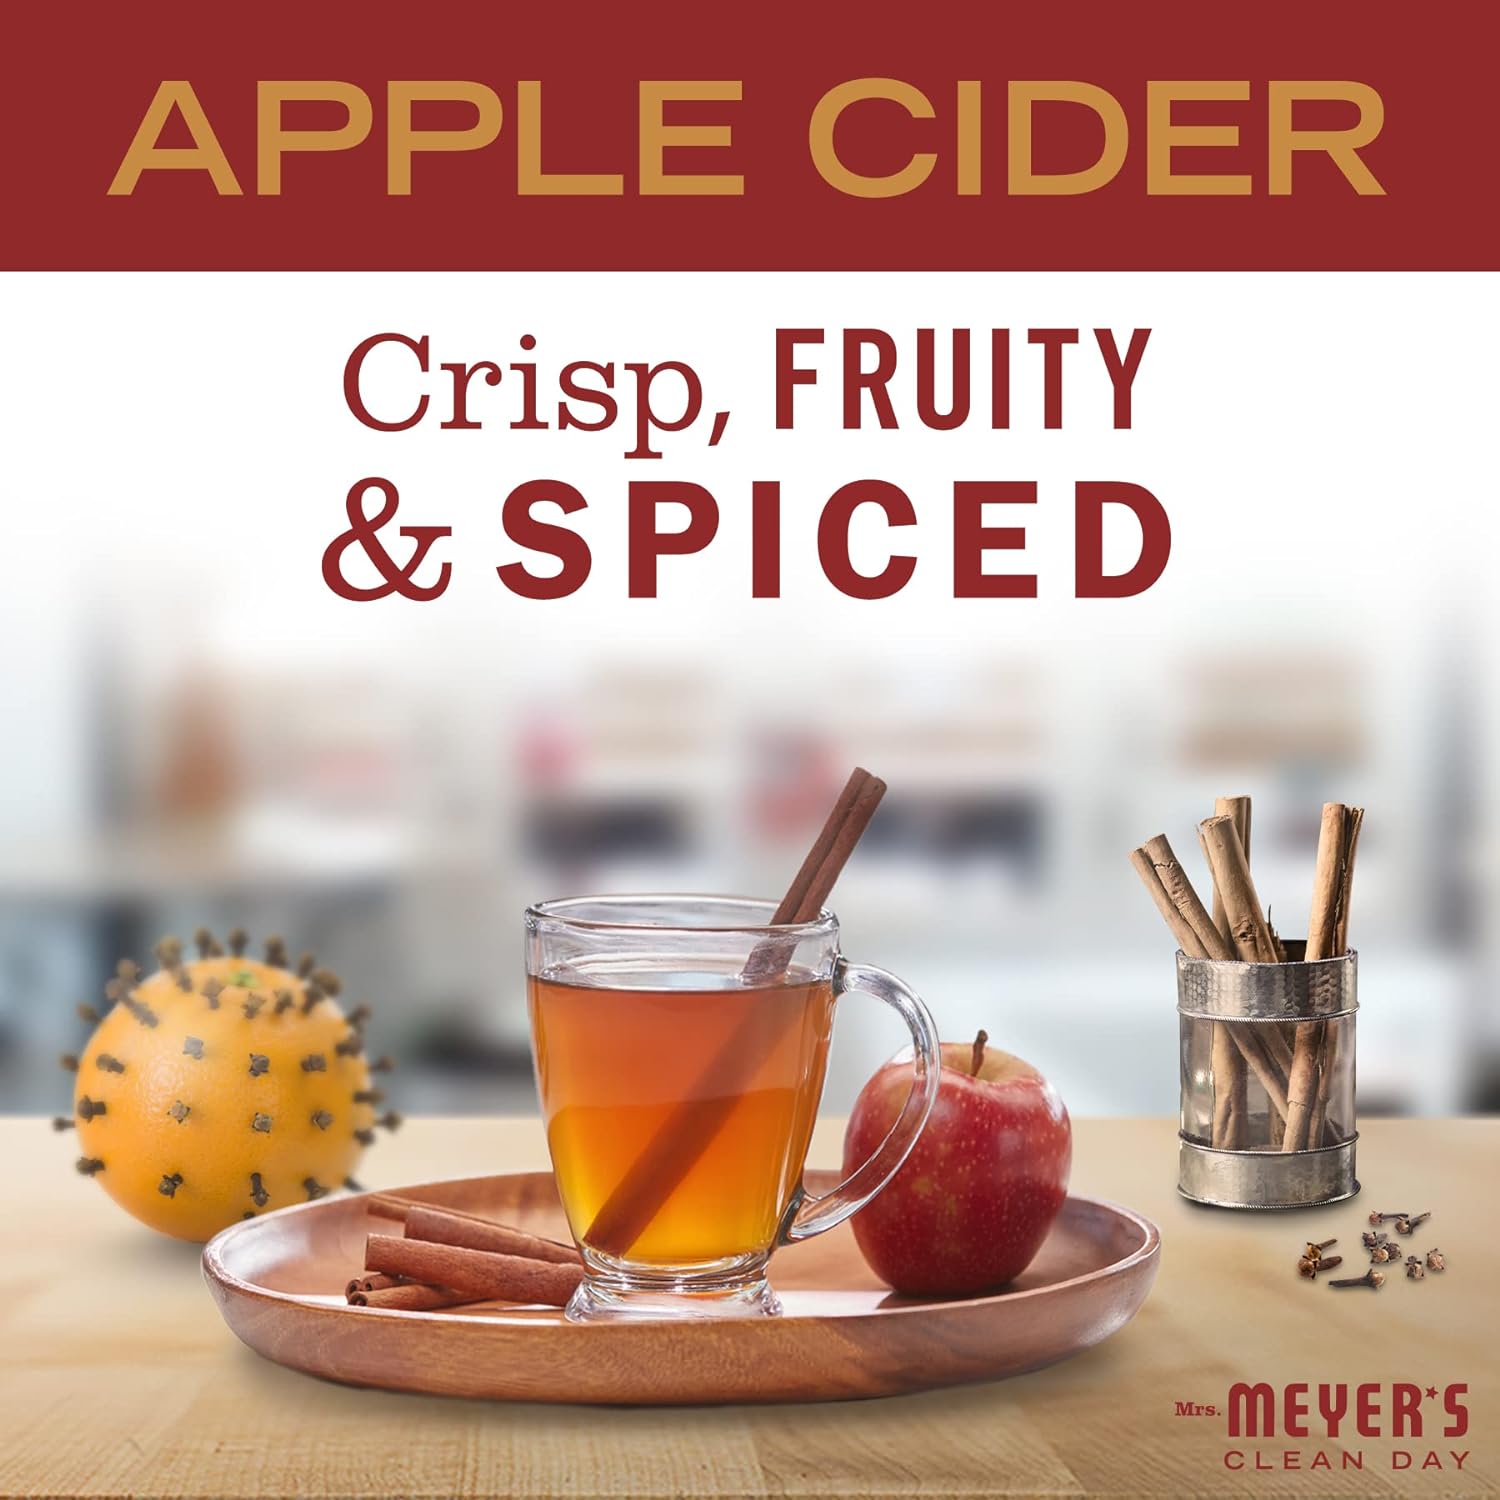 Mrs. Meyer's Clean Day Room Freshener, Apple Cider, 8 Fl Oz (Pack of 1) : Health & Household